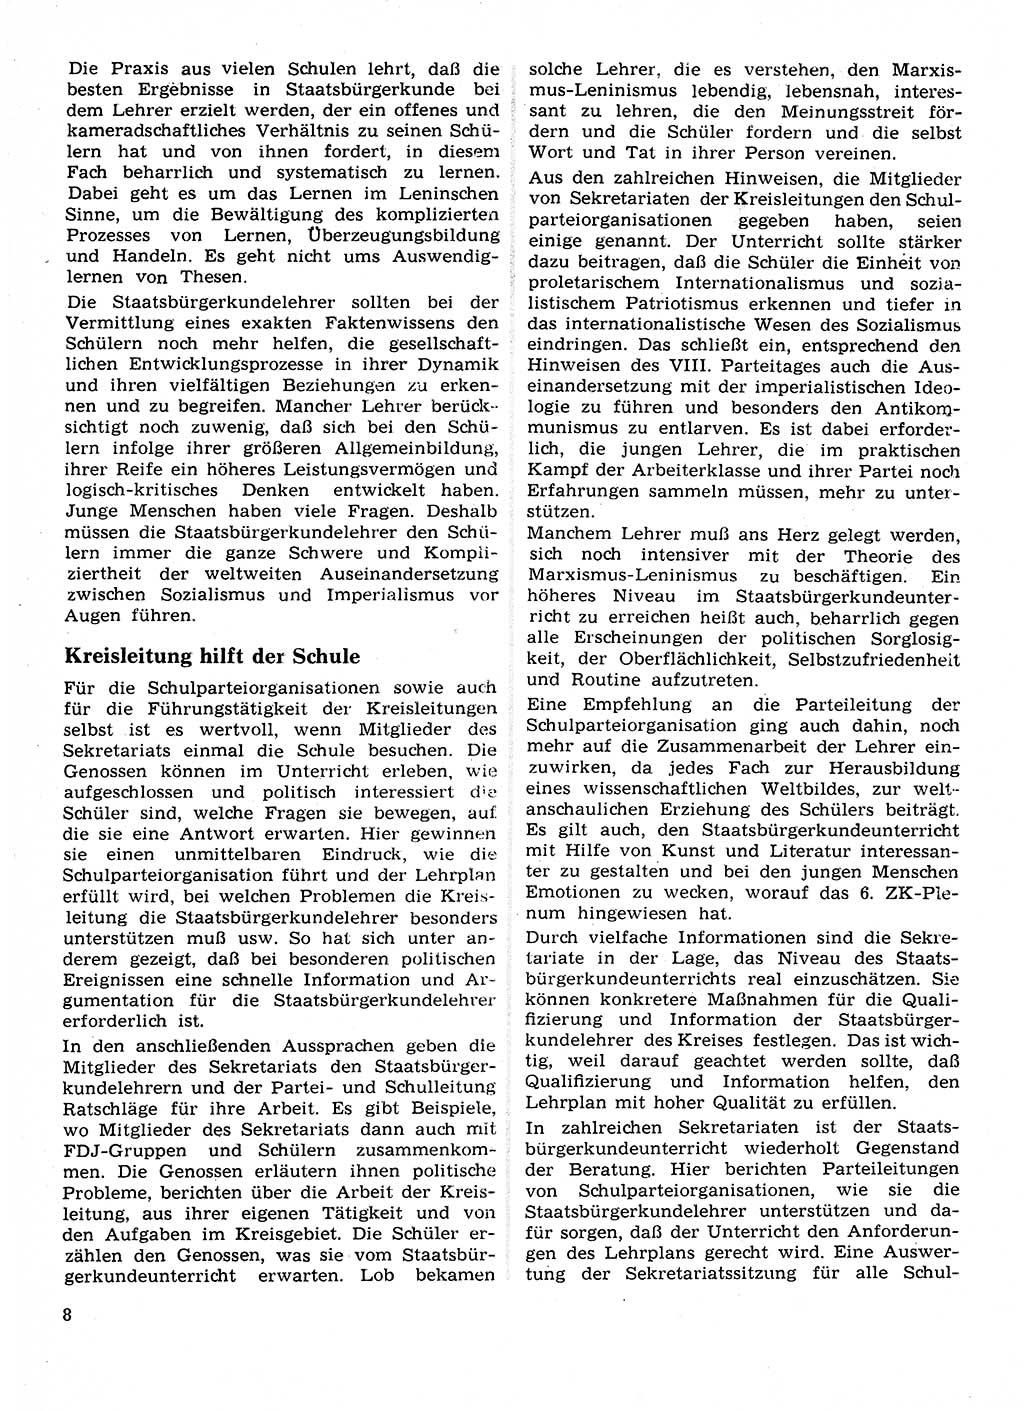 Neuer Weg (NW), Organ des Zentralkomitees (ZK) der SED (Sozialistische Einheitspartei Deutschlands) fÃ¼r Fragen des Parteilebens, 28. Jahrgang [Deutsche Demokratische Republik (DDR)] 1973, Seite 8 (NW ZK SED DDR 1973, S. 8)